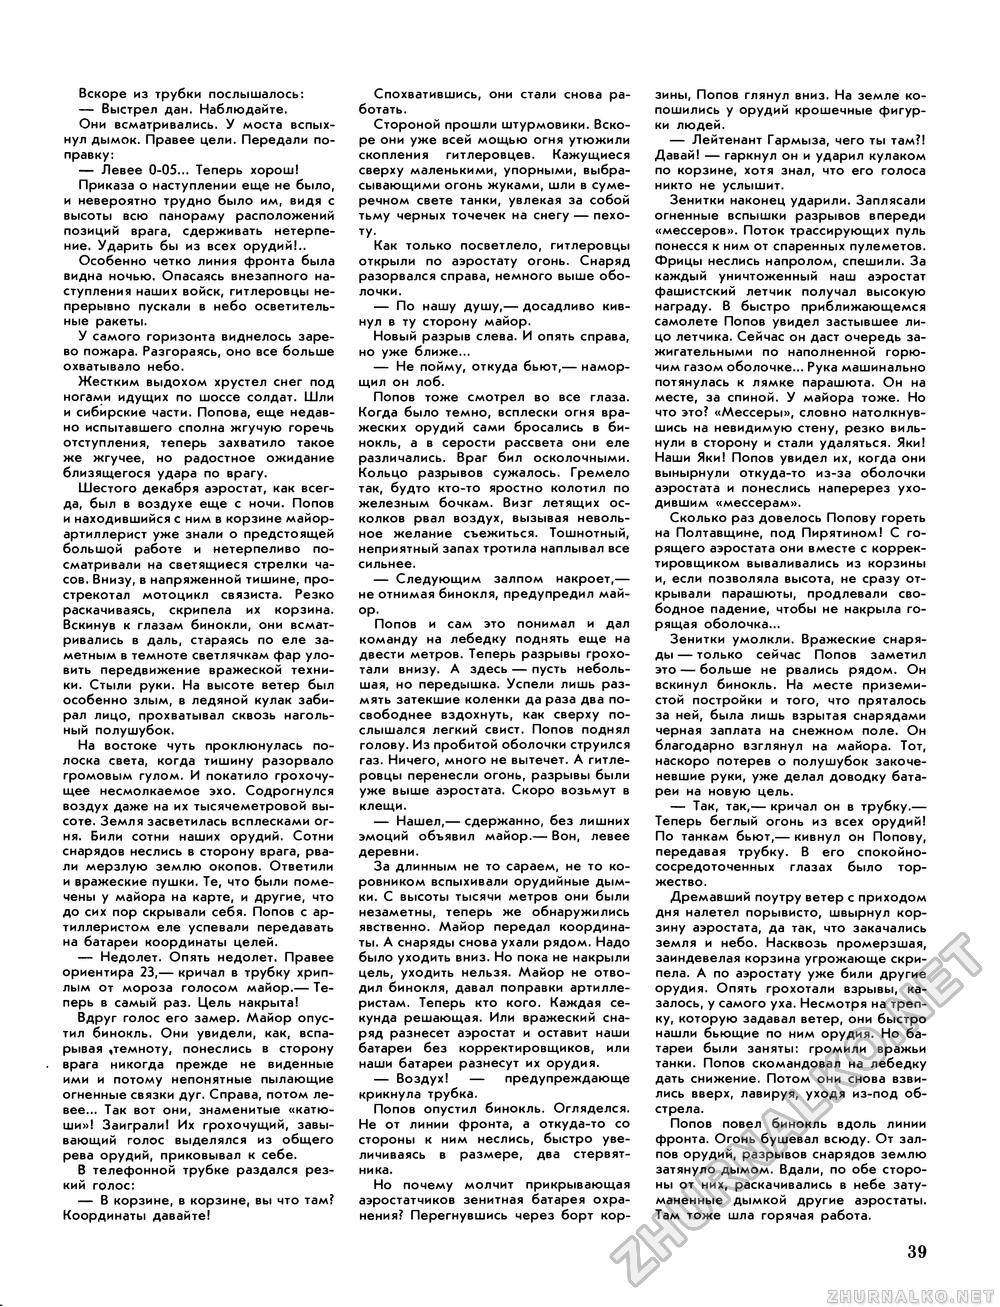 Вокруг света 1985-12, страница 41